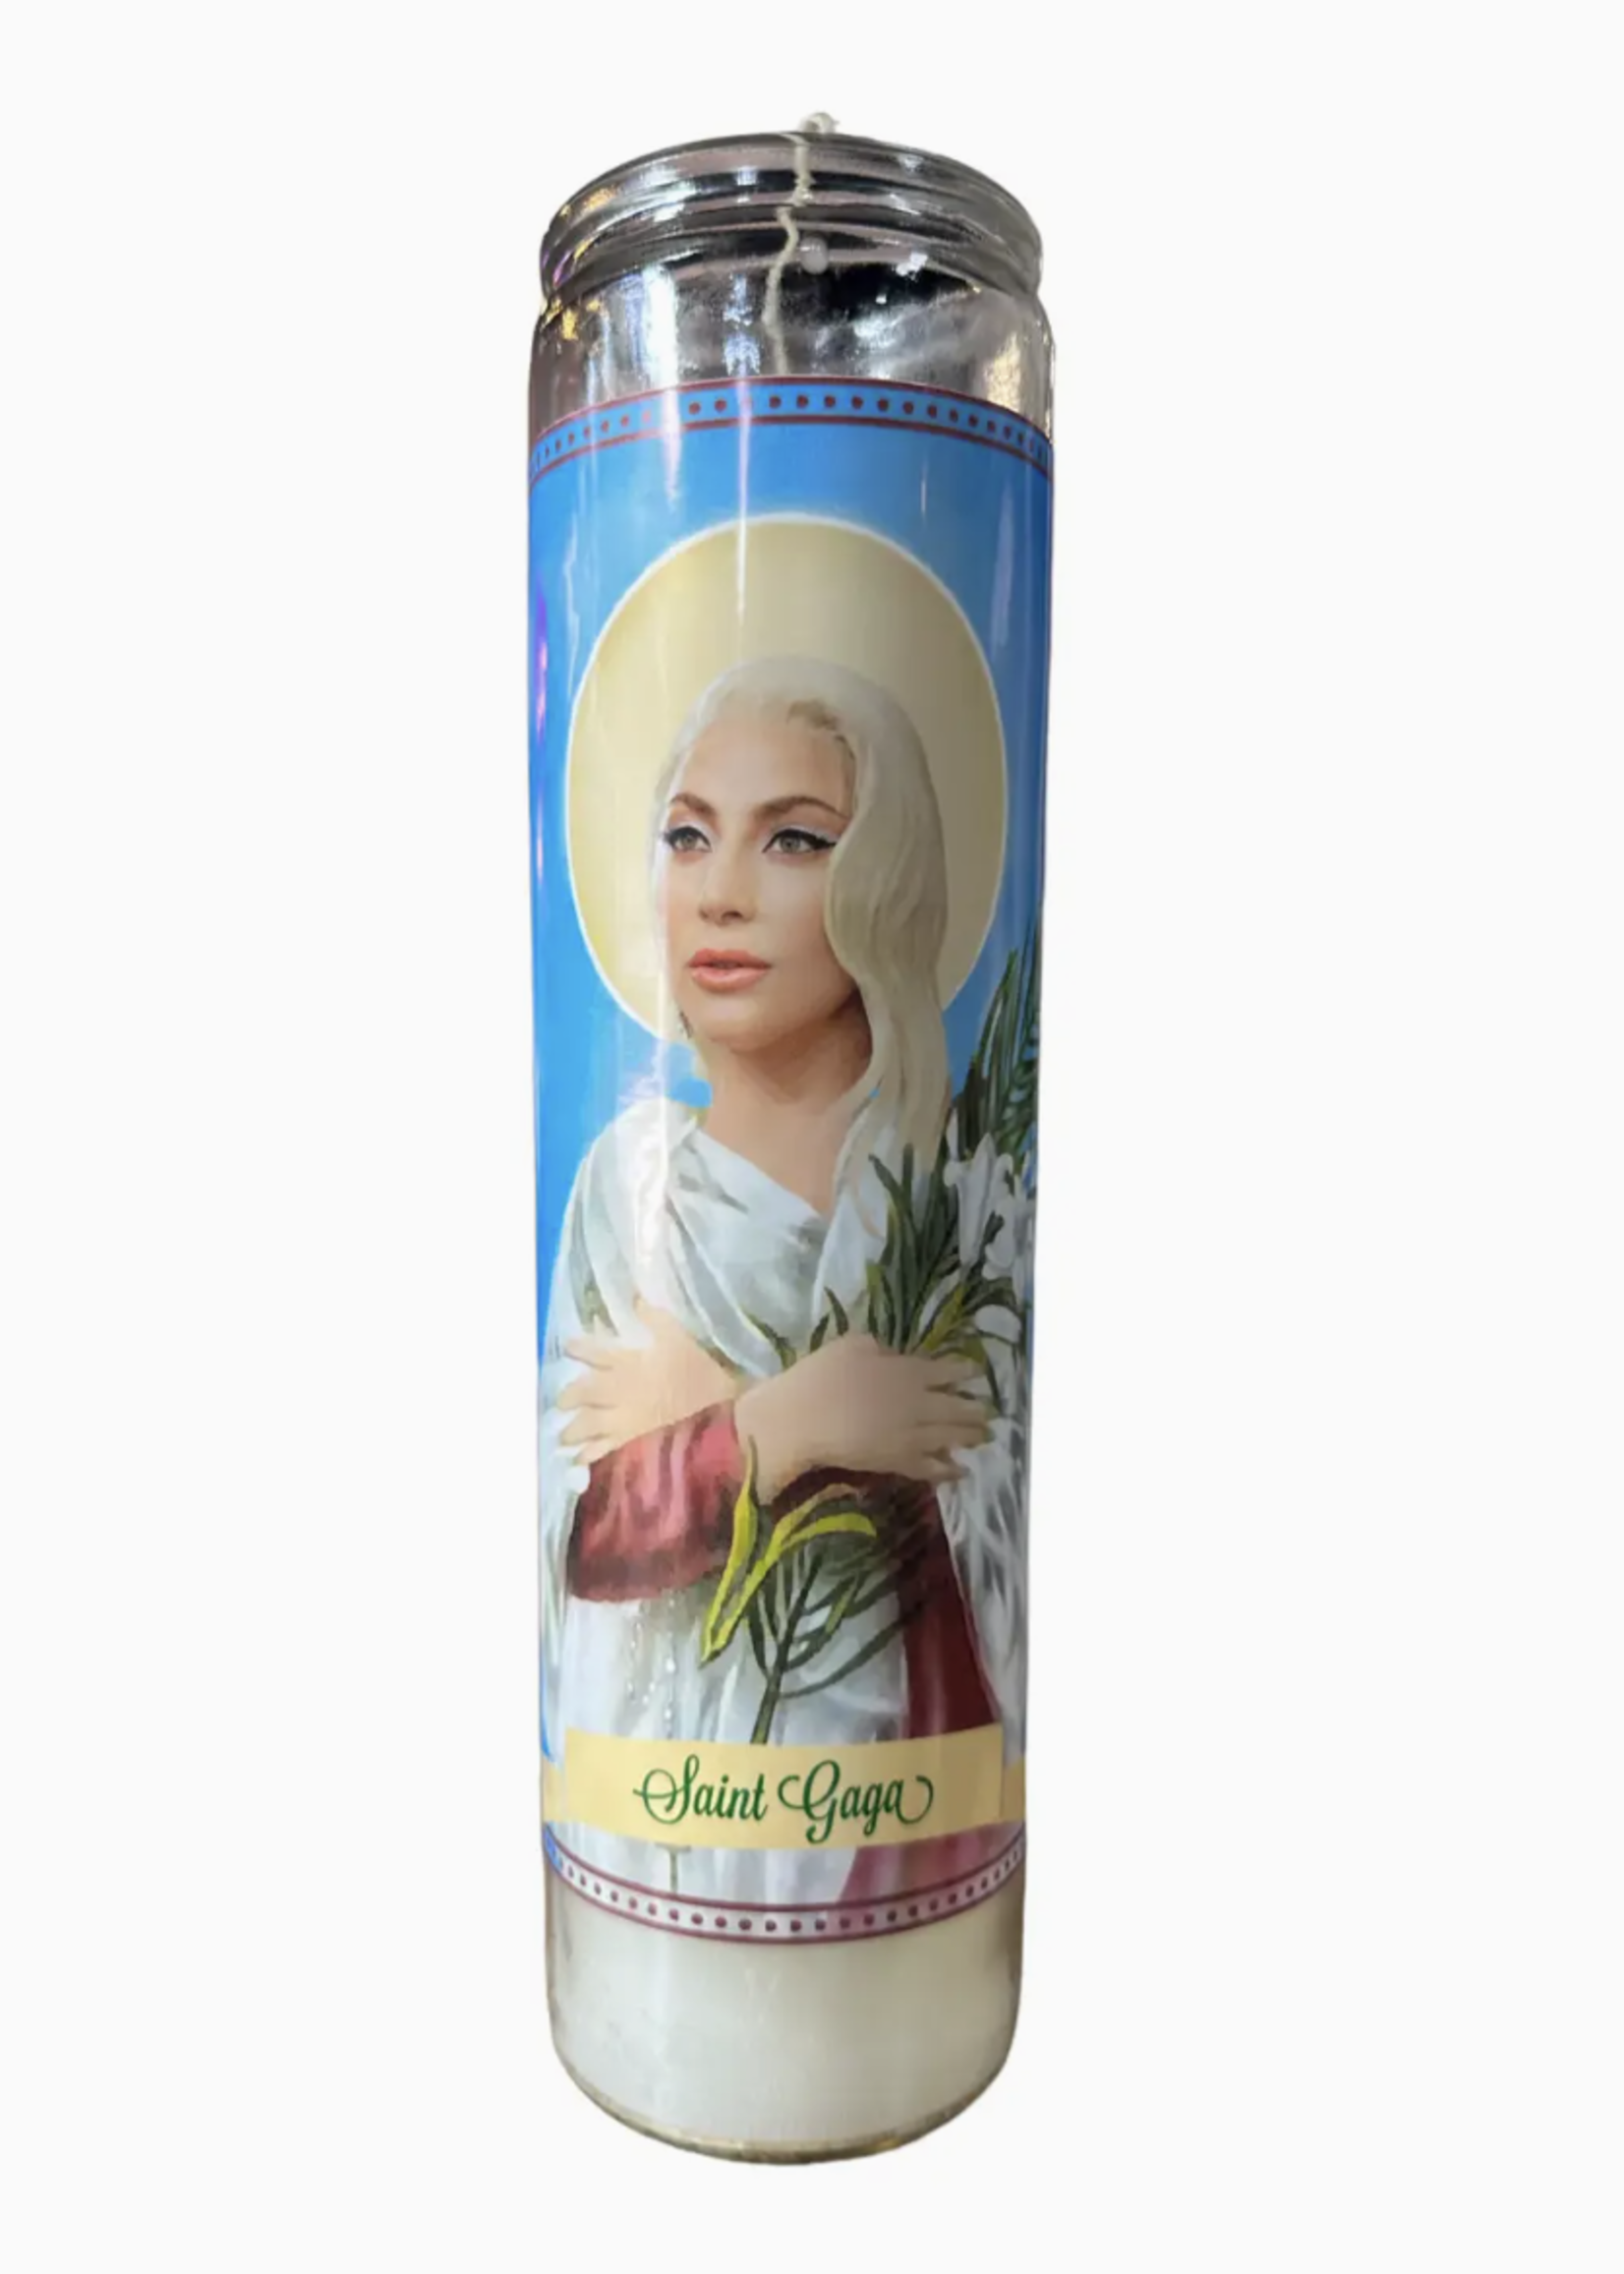 The Luminary and Co. Saint Lady Gaga Ritual Candle